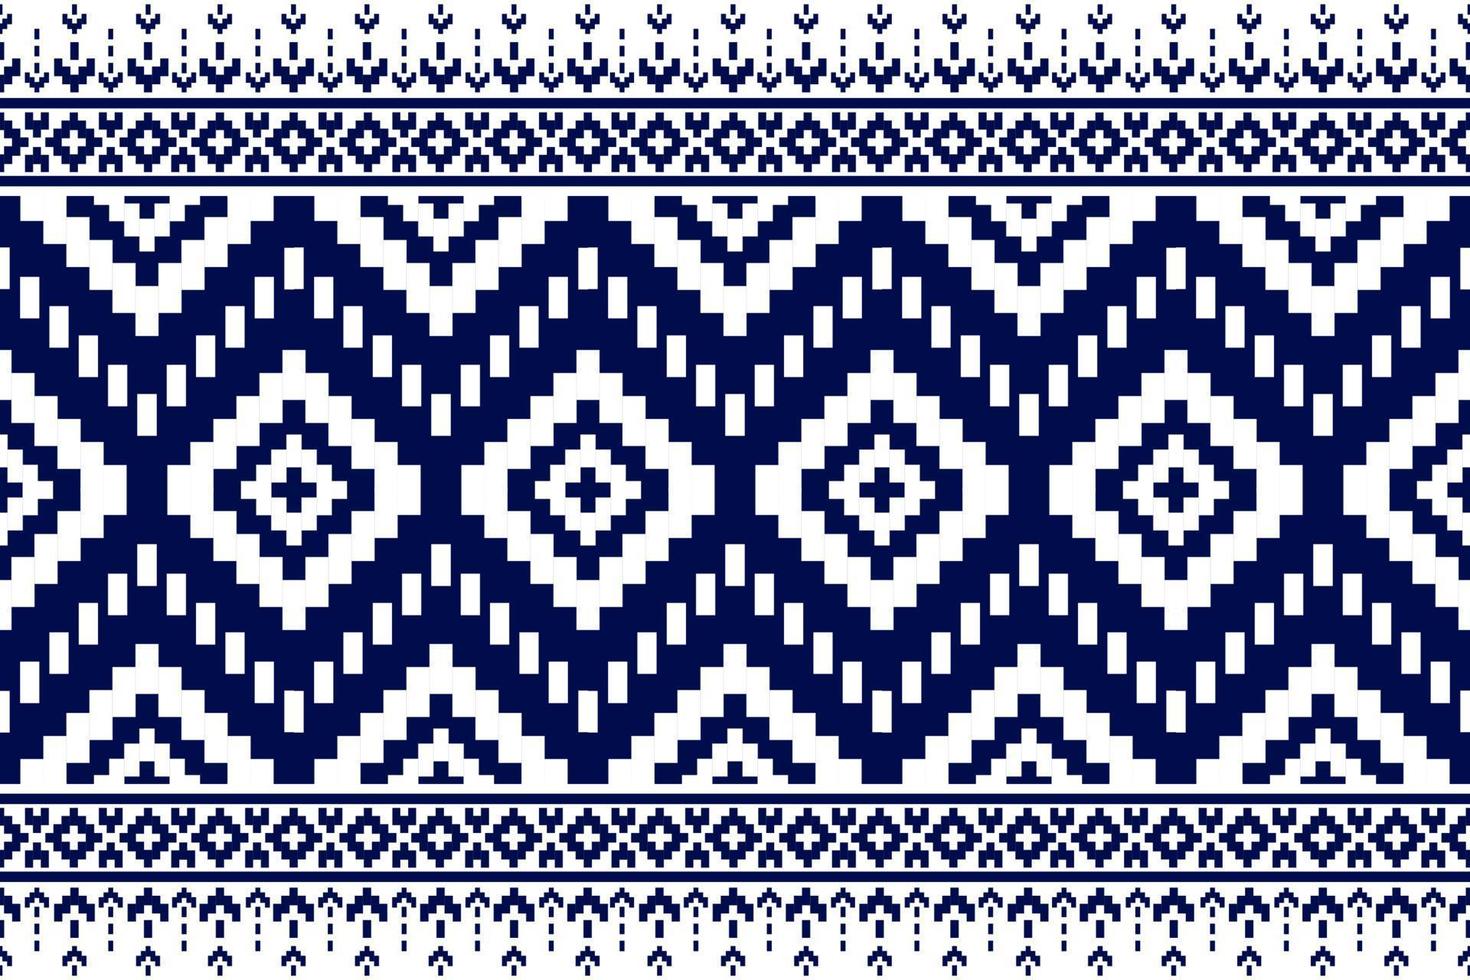 alfombra patrón tribal arte geométrico étnico de patrones sin fisuras. estilo americano, mexicano. vector